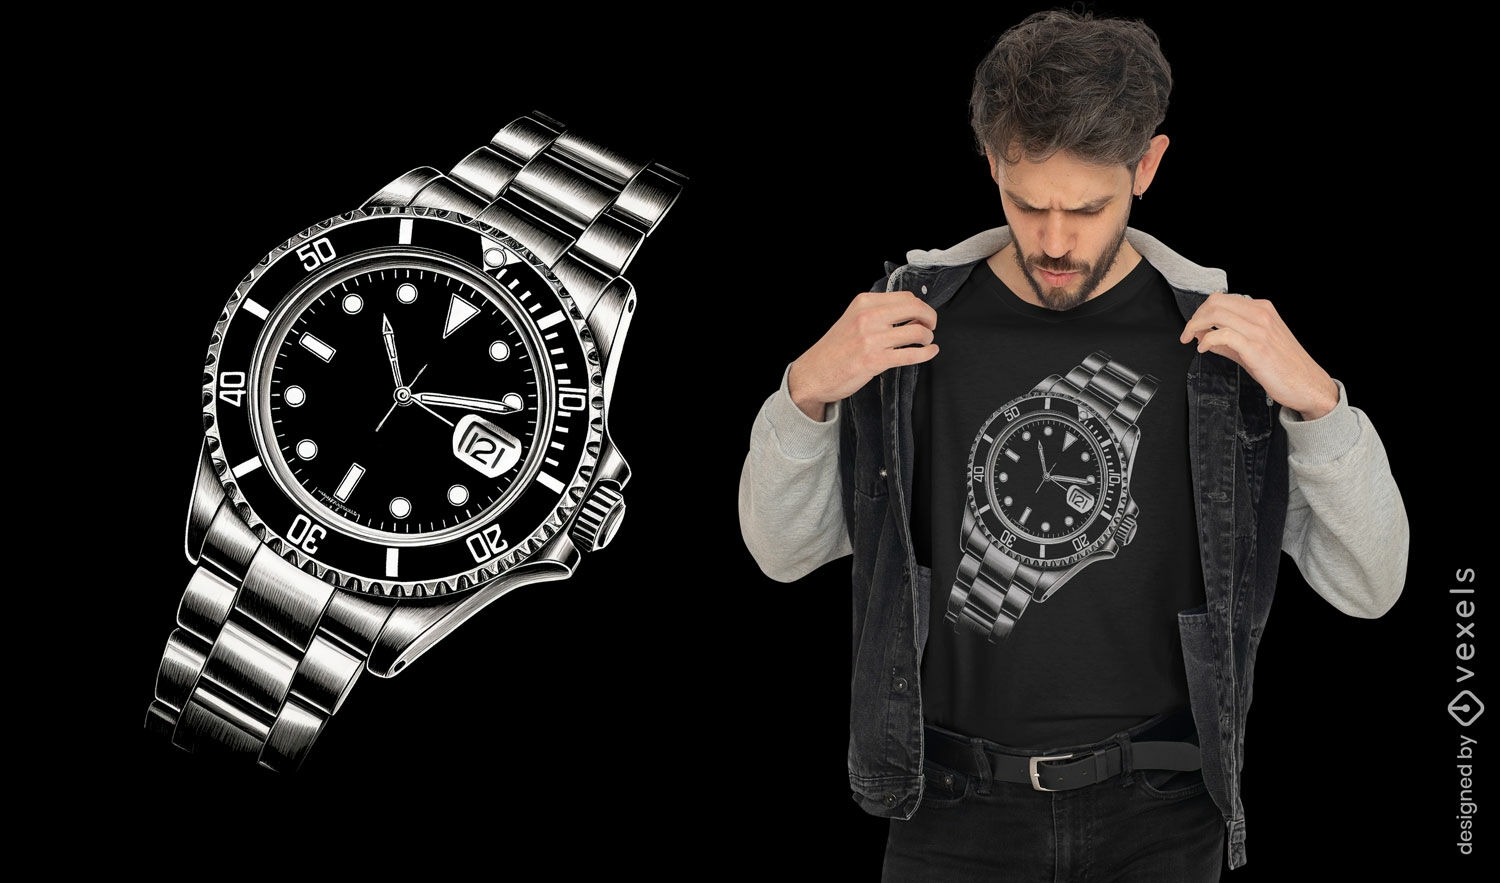 Wrist watch t-shirt design